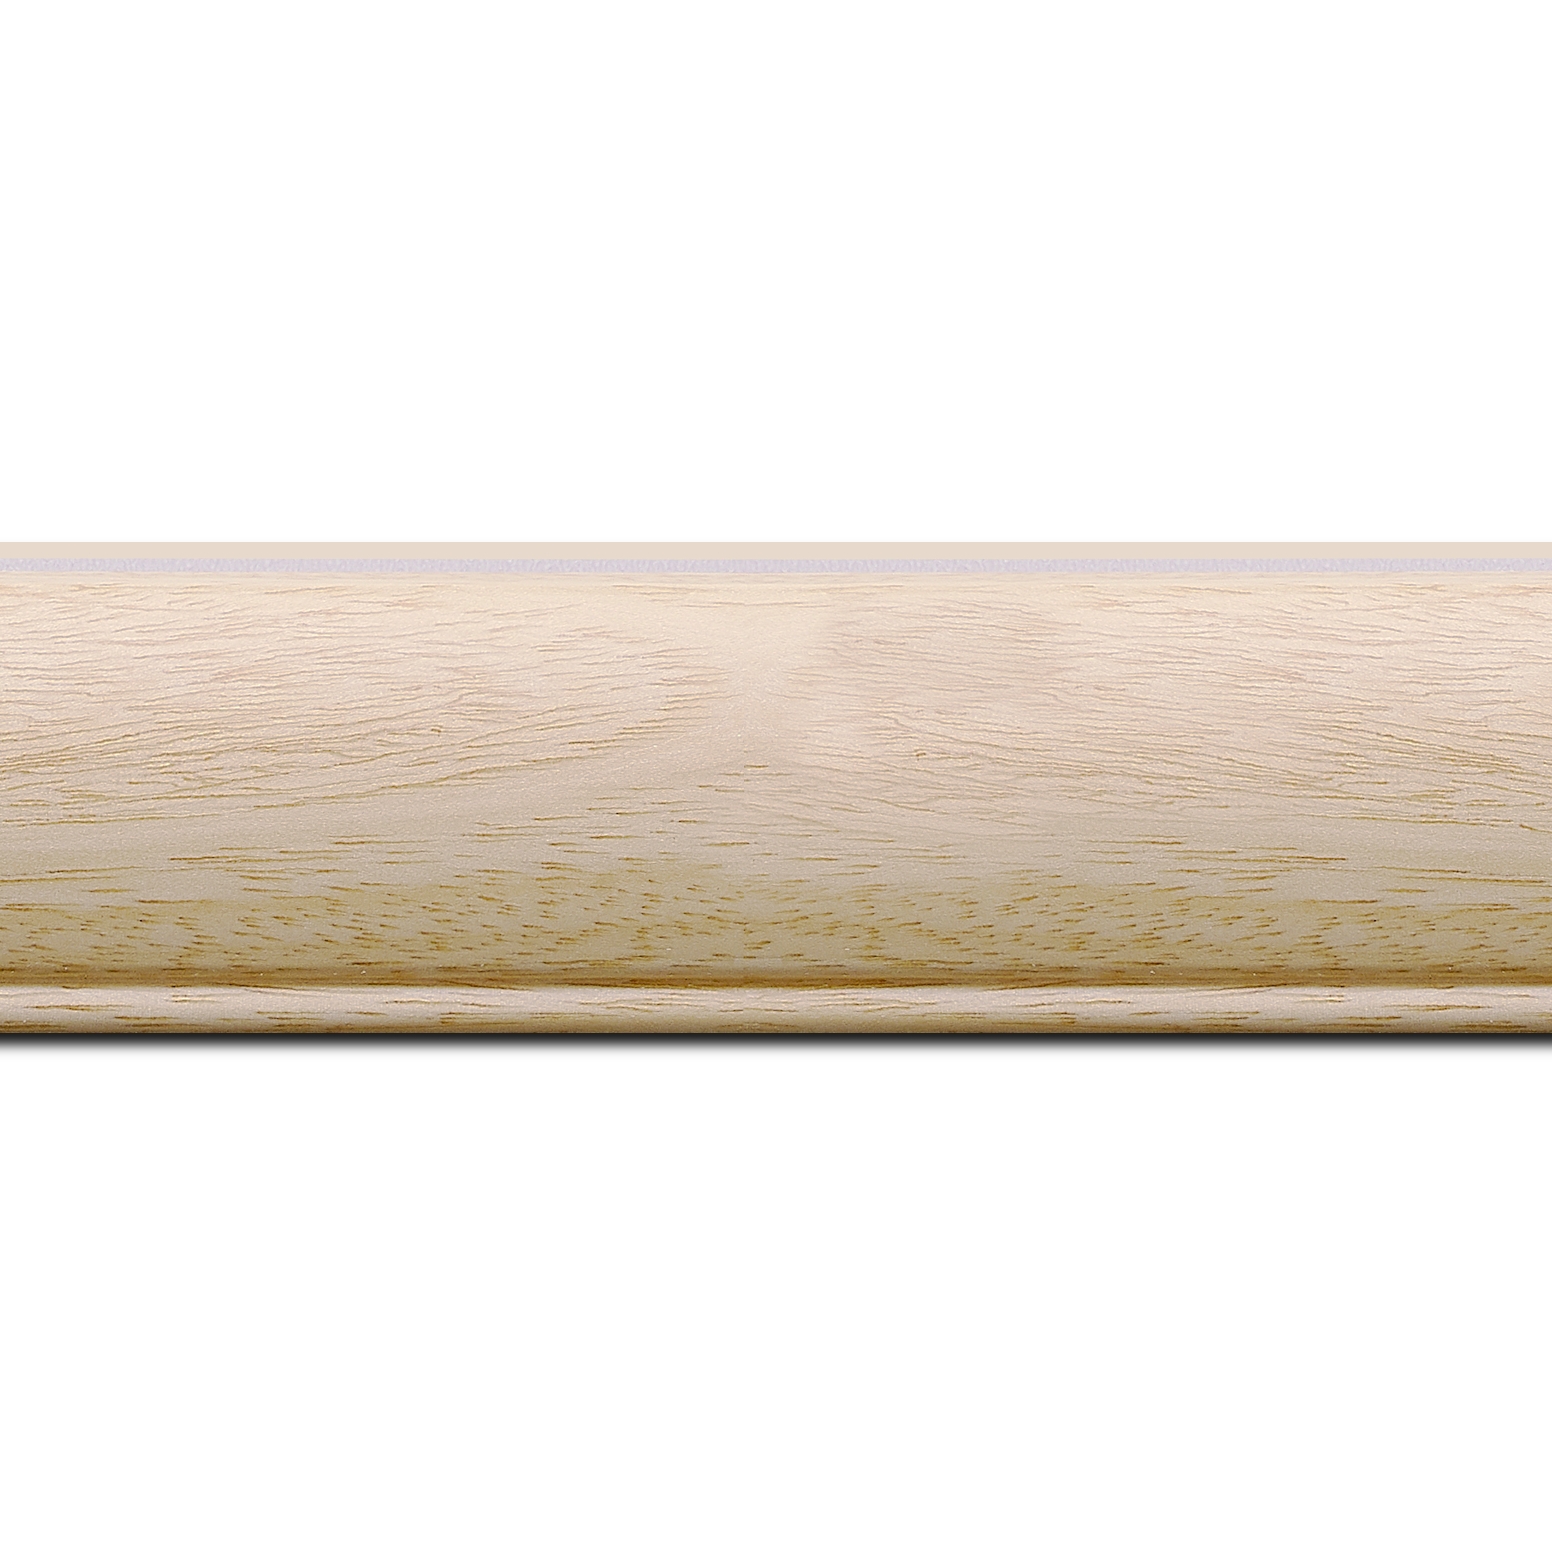 Pack par 12m, bois profil arrondi largeur 4.7cm ayous massif naturel (sans vernis, peut être peint)  (longueur baguette pouvant varier entre 2.40m et 3m selon arrivage des bois)